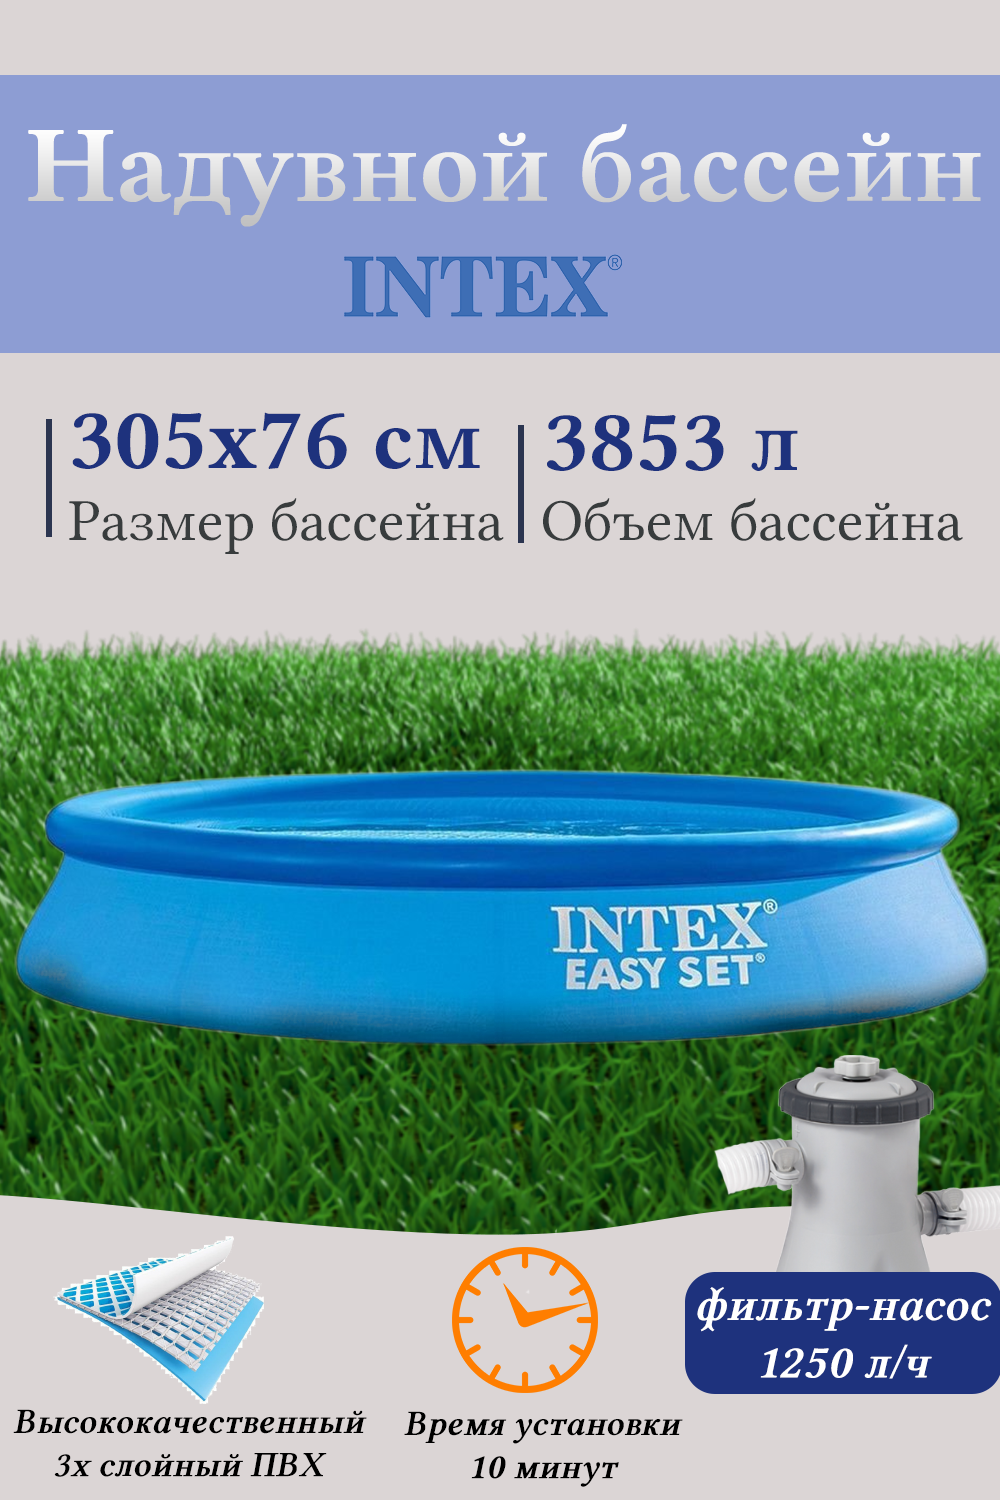 Надувной бассейн INTEX И28122, 76х305 см